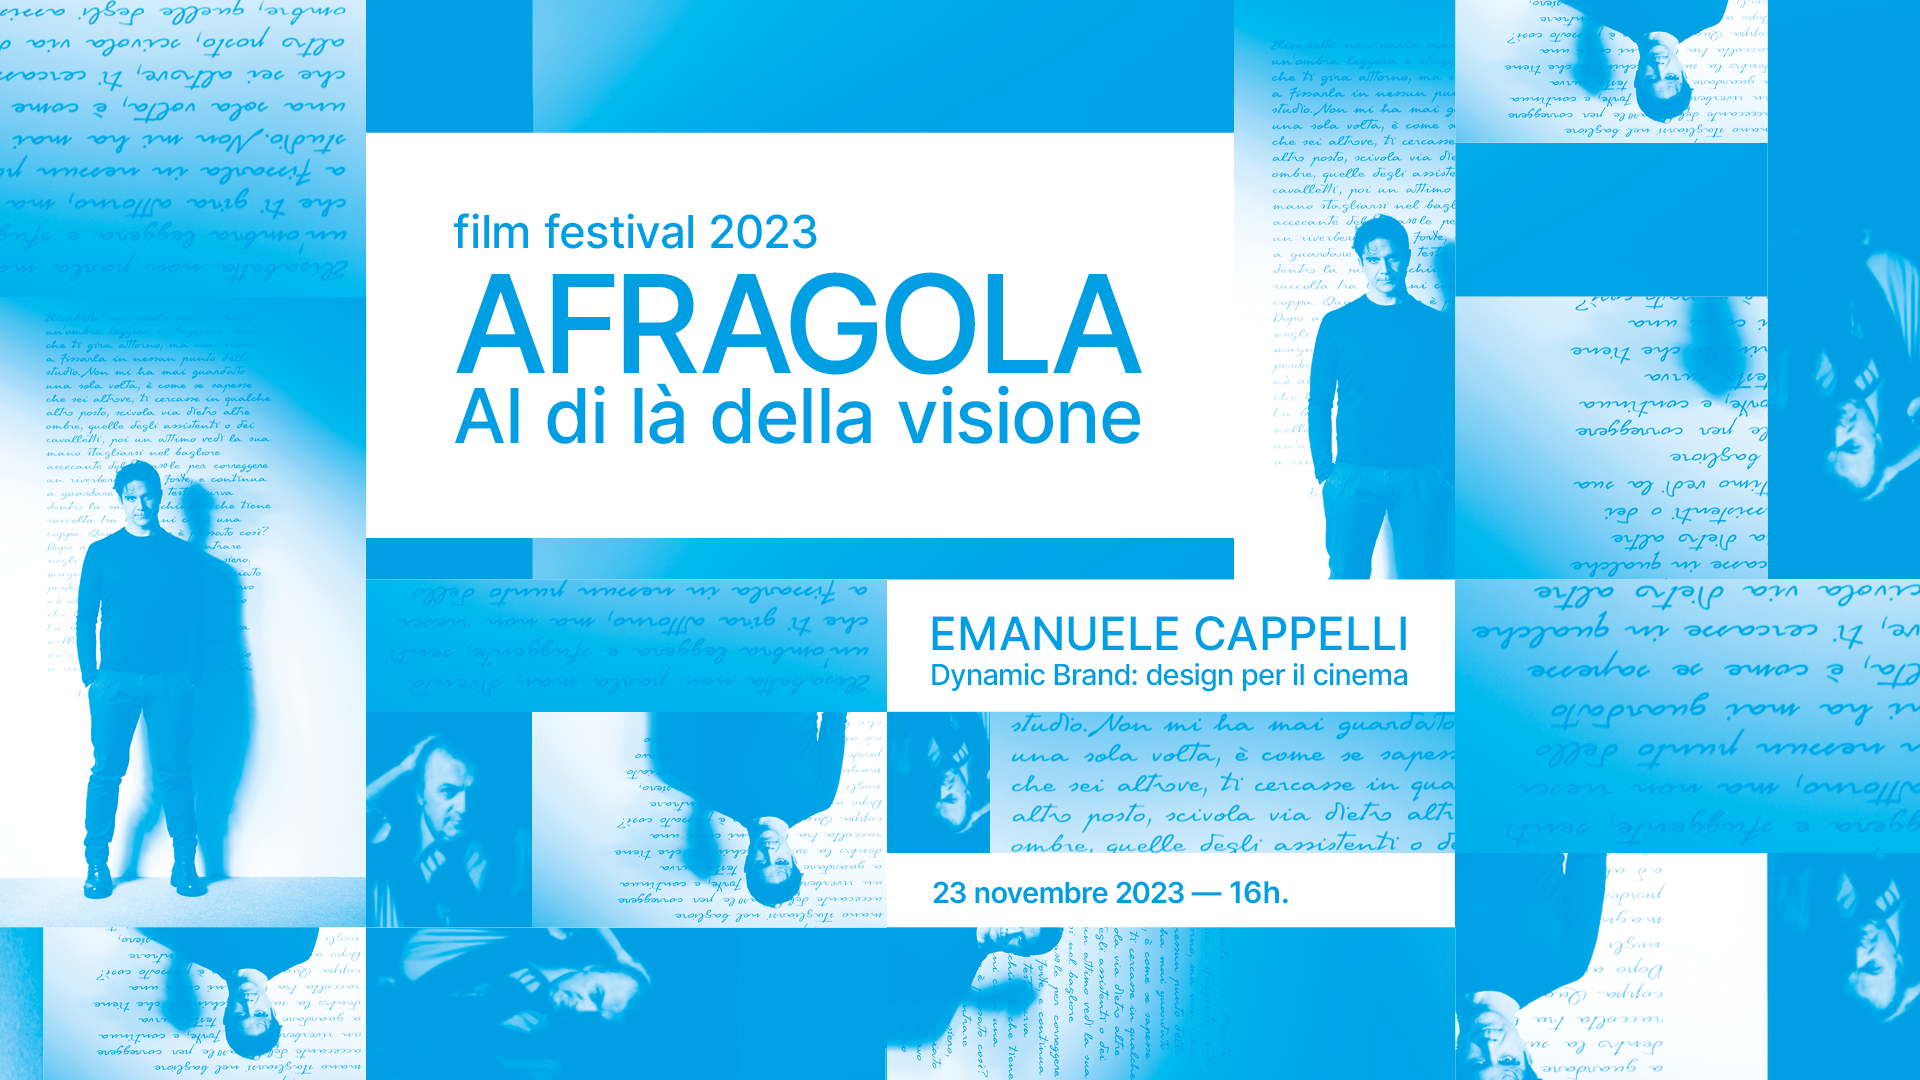 Afragola Film Festival Emanuele Cappelli